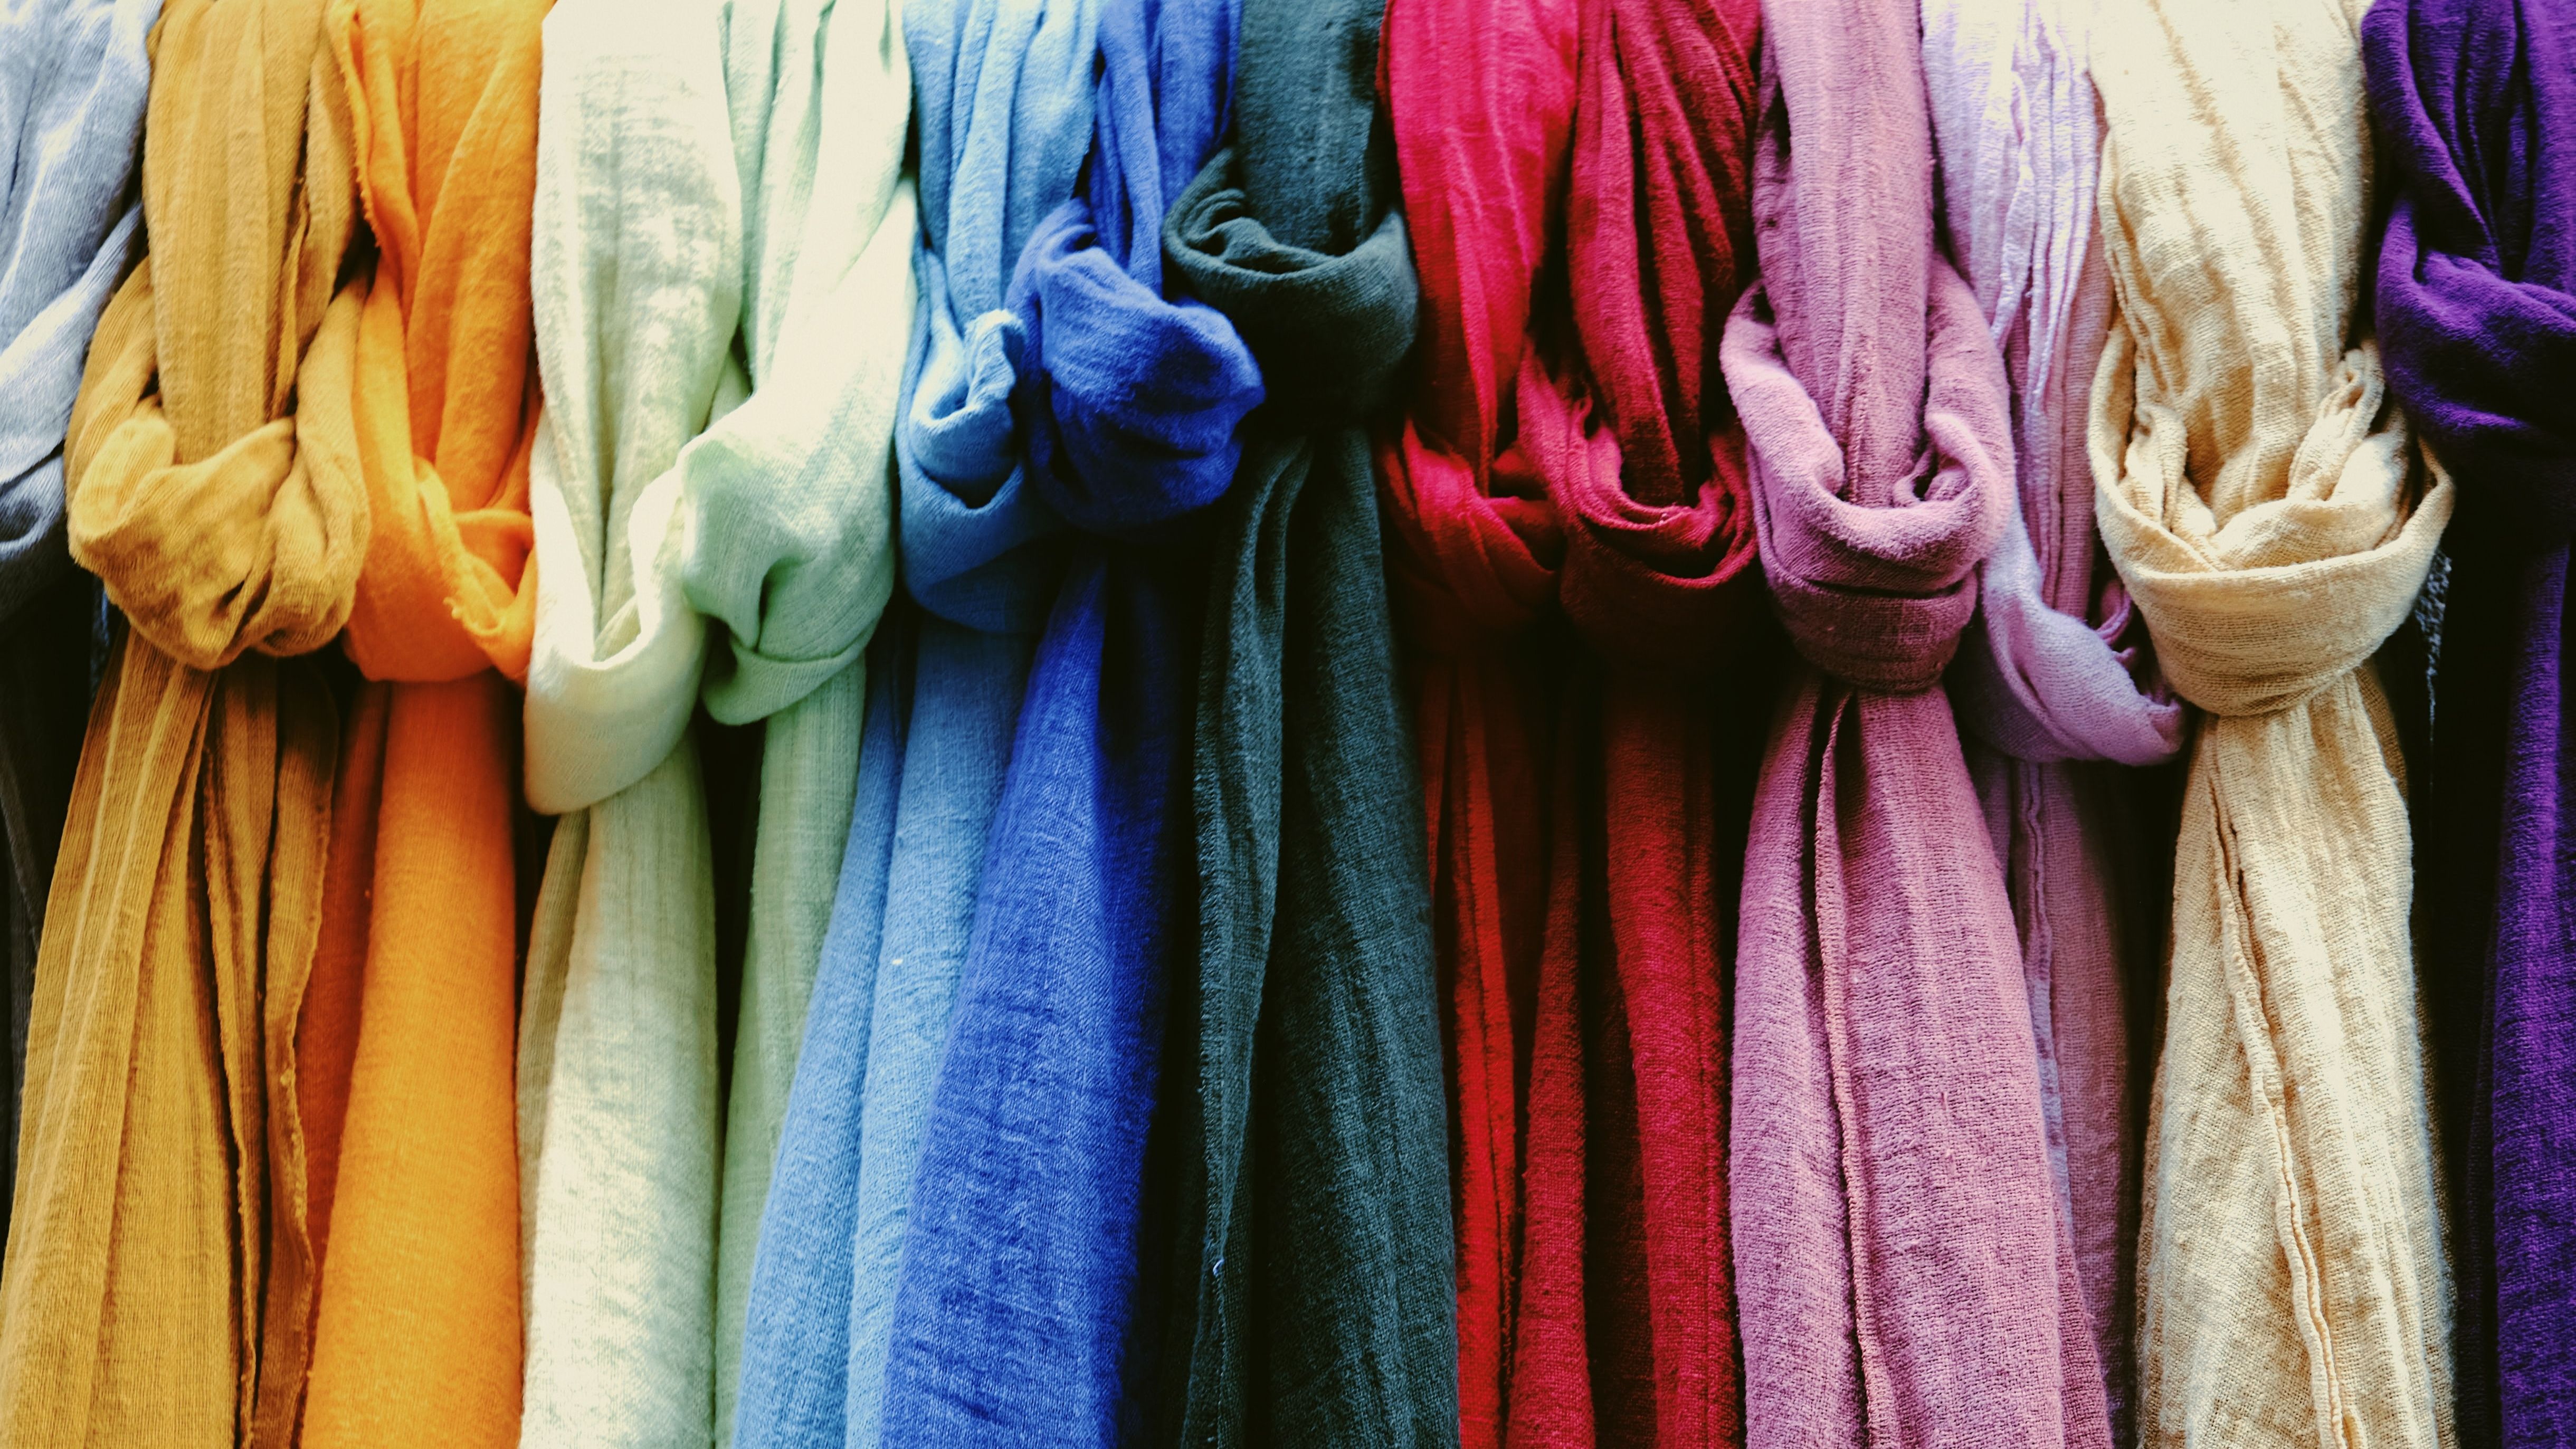 Antes de empezar a usar prendas de lino tienes que saber estos consejos  sobre cómo lavarlas, plancharlas y cuidarlas